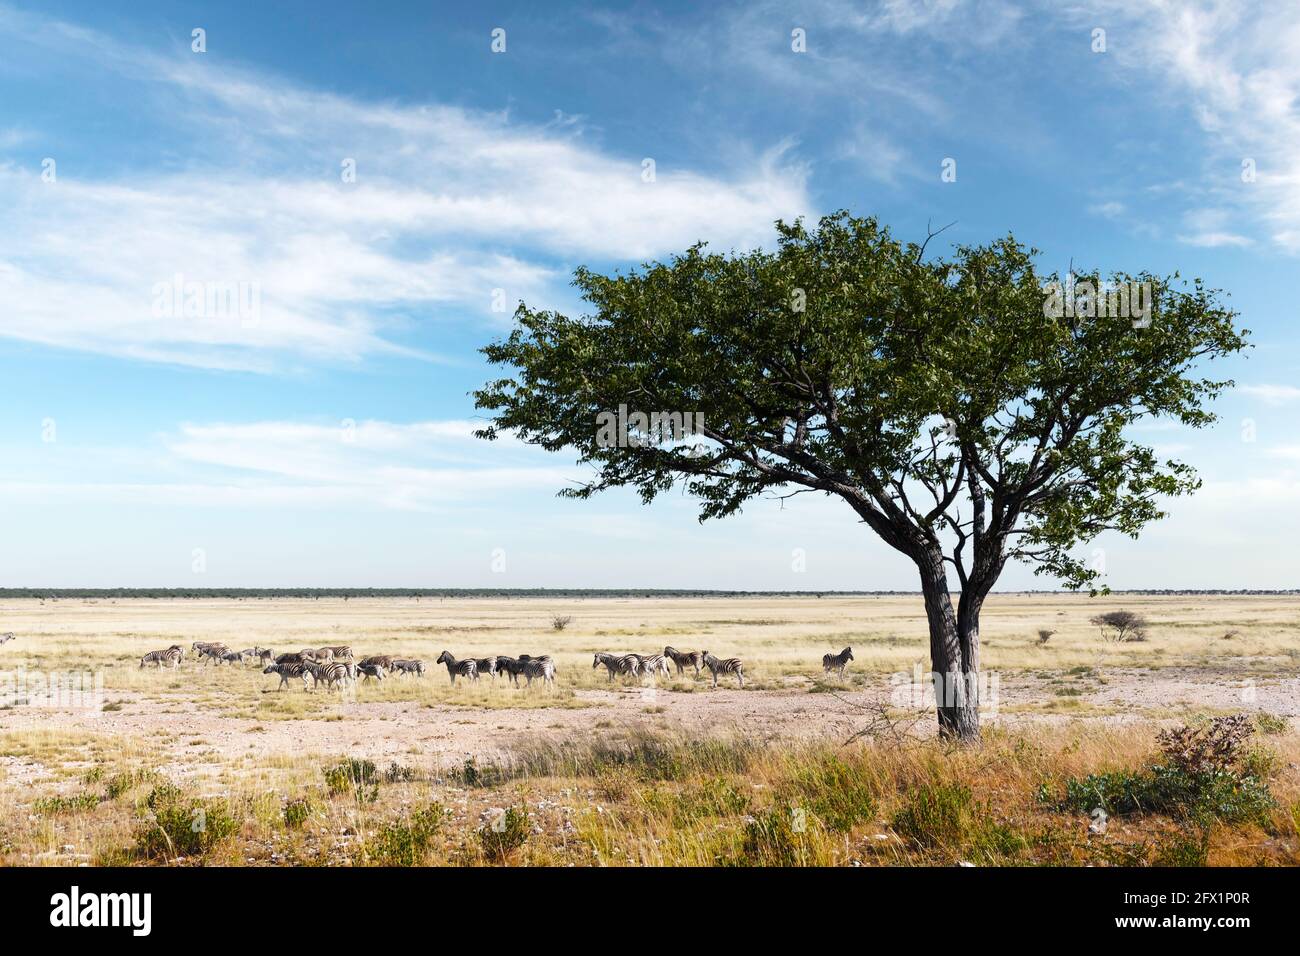 Afrikanische Ebenen Zebras Herde auf der trockenen braunen Savanne Grasland Browsing und Weiden. Blauer Himmel mit Wolken im Hintergrund. Wildtierfotografie Stockfoto